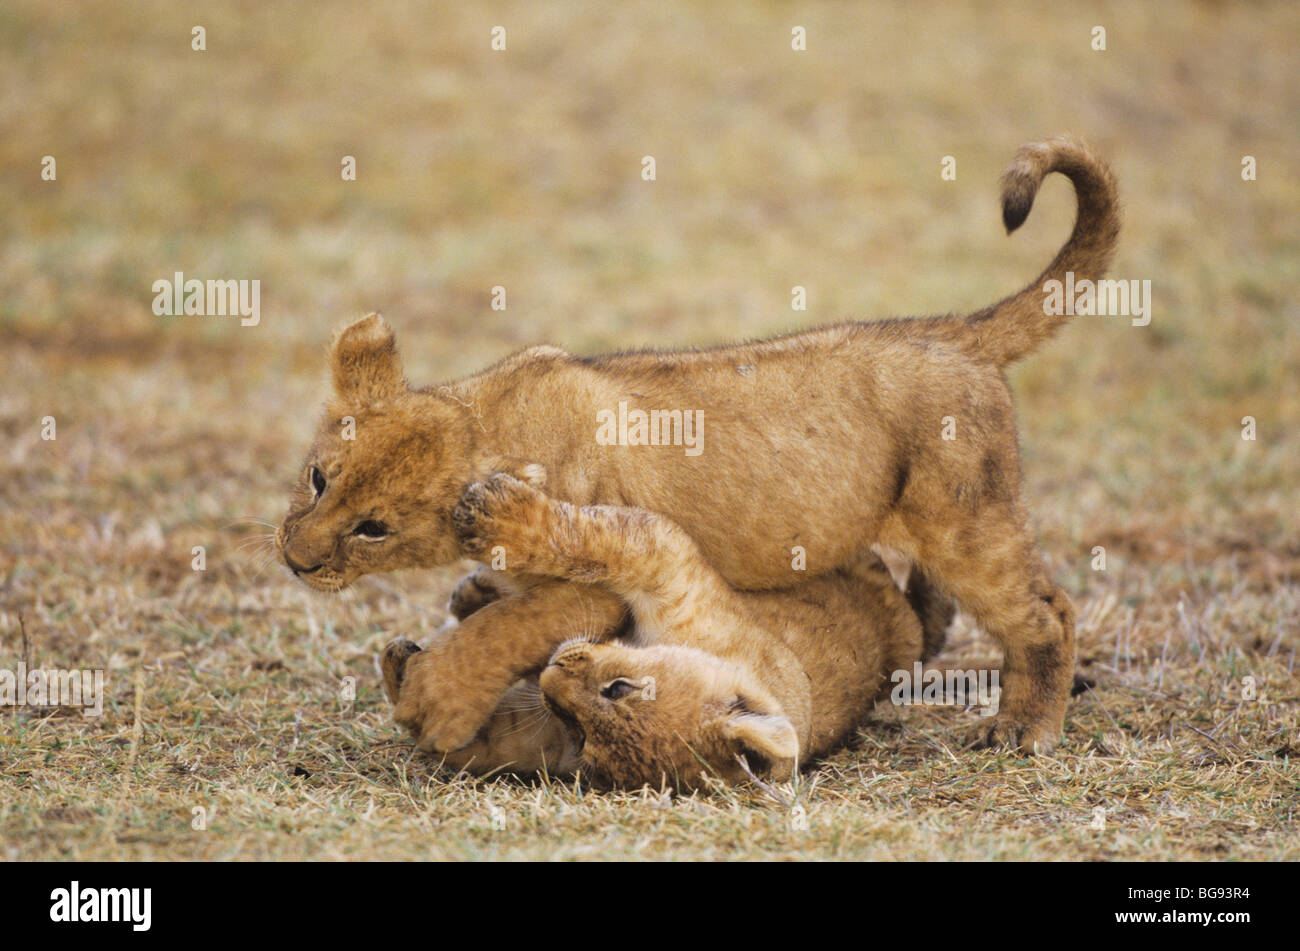 African Lion (Panthera leo), cubs playing, Serengeti National Park, Tanzania, Africa Stock Photo